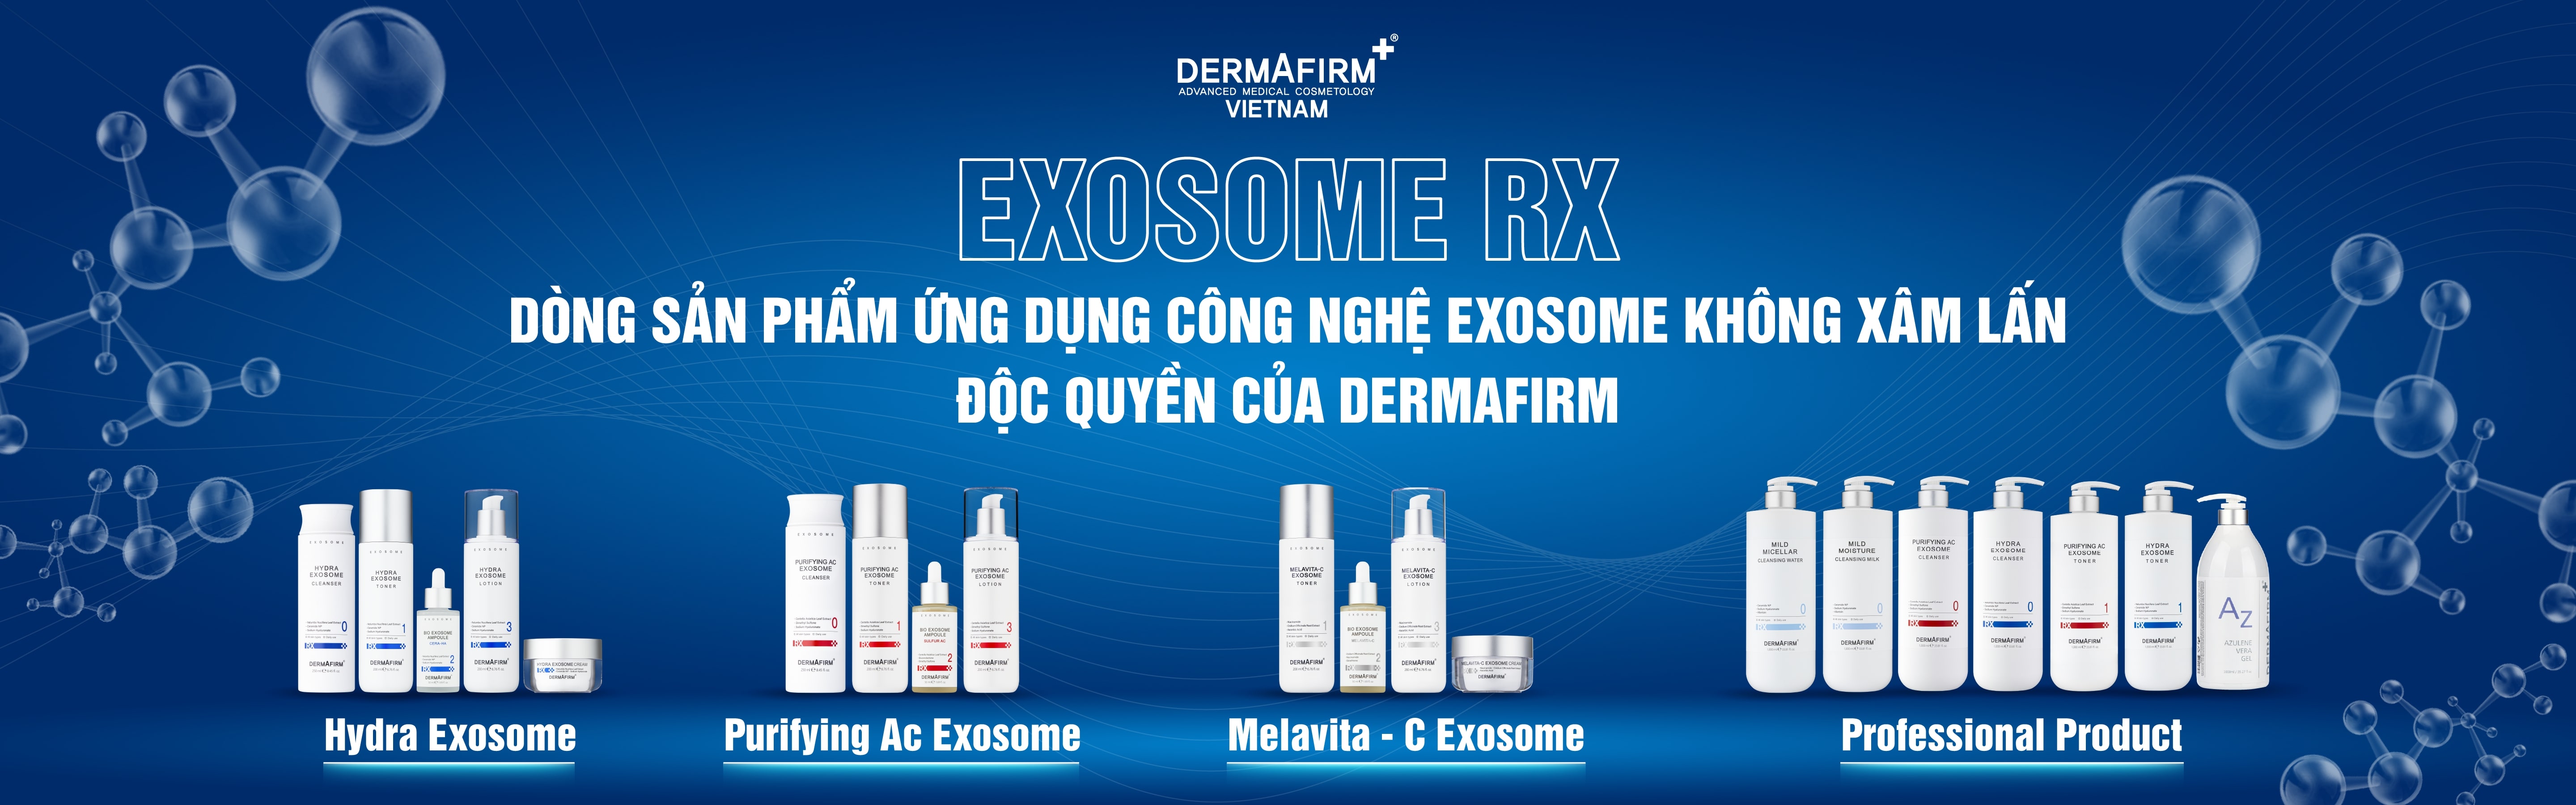 Bộ Hydra Exosome - Bộ đặc trị cấp ẩm tái sinh làn da thô ráp